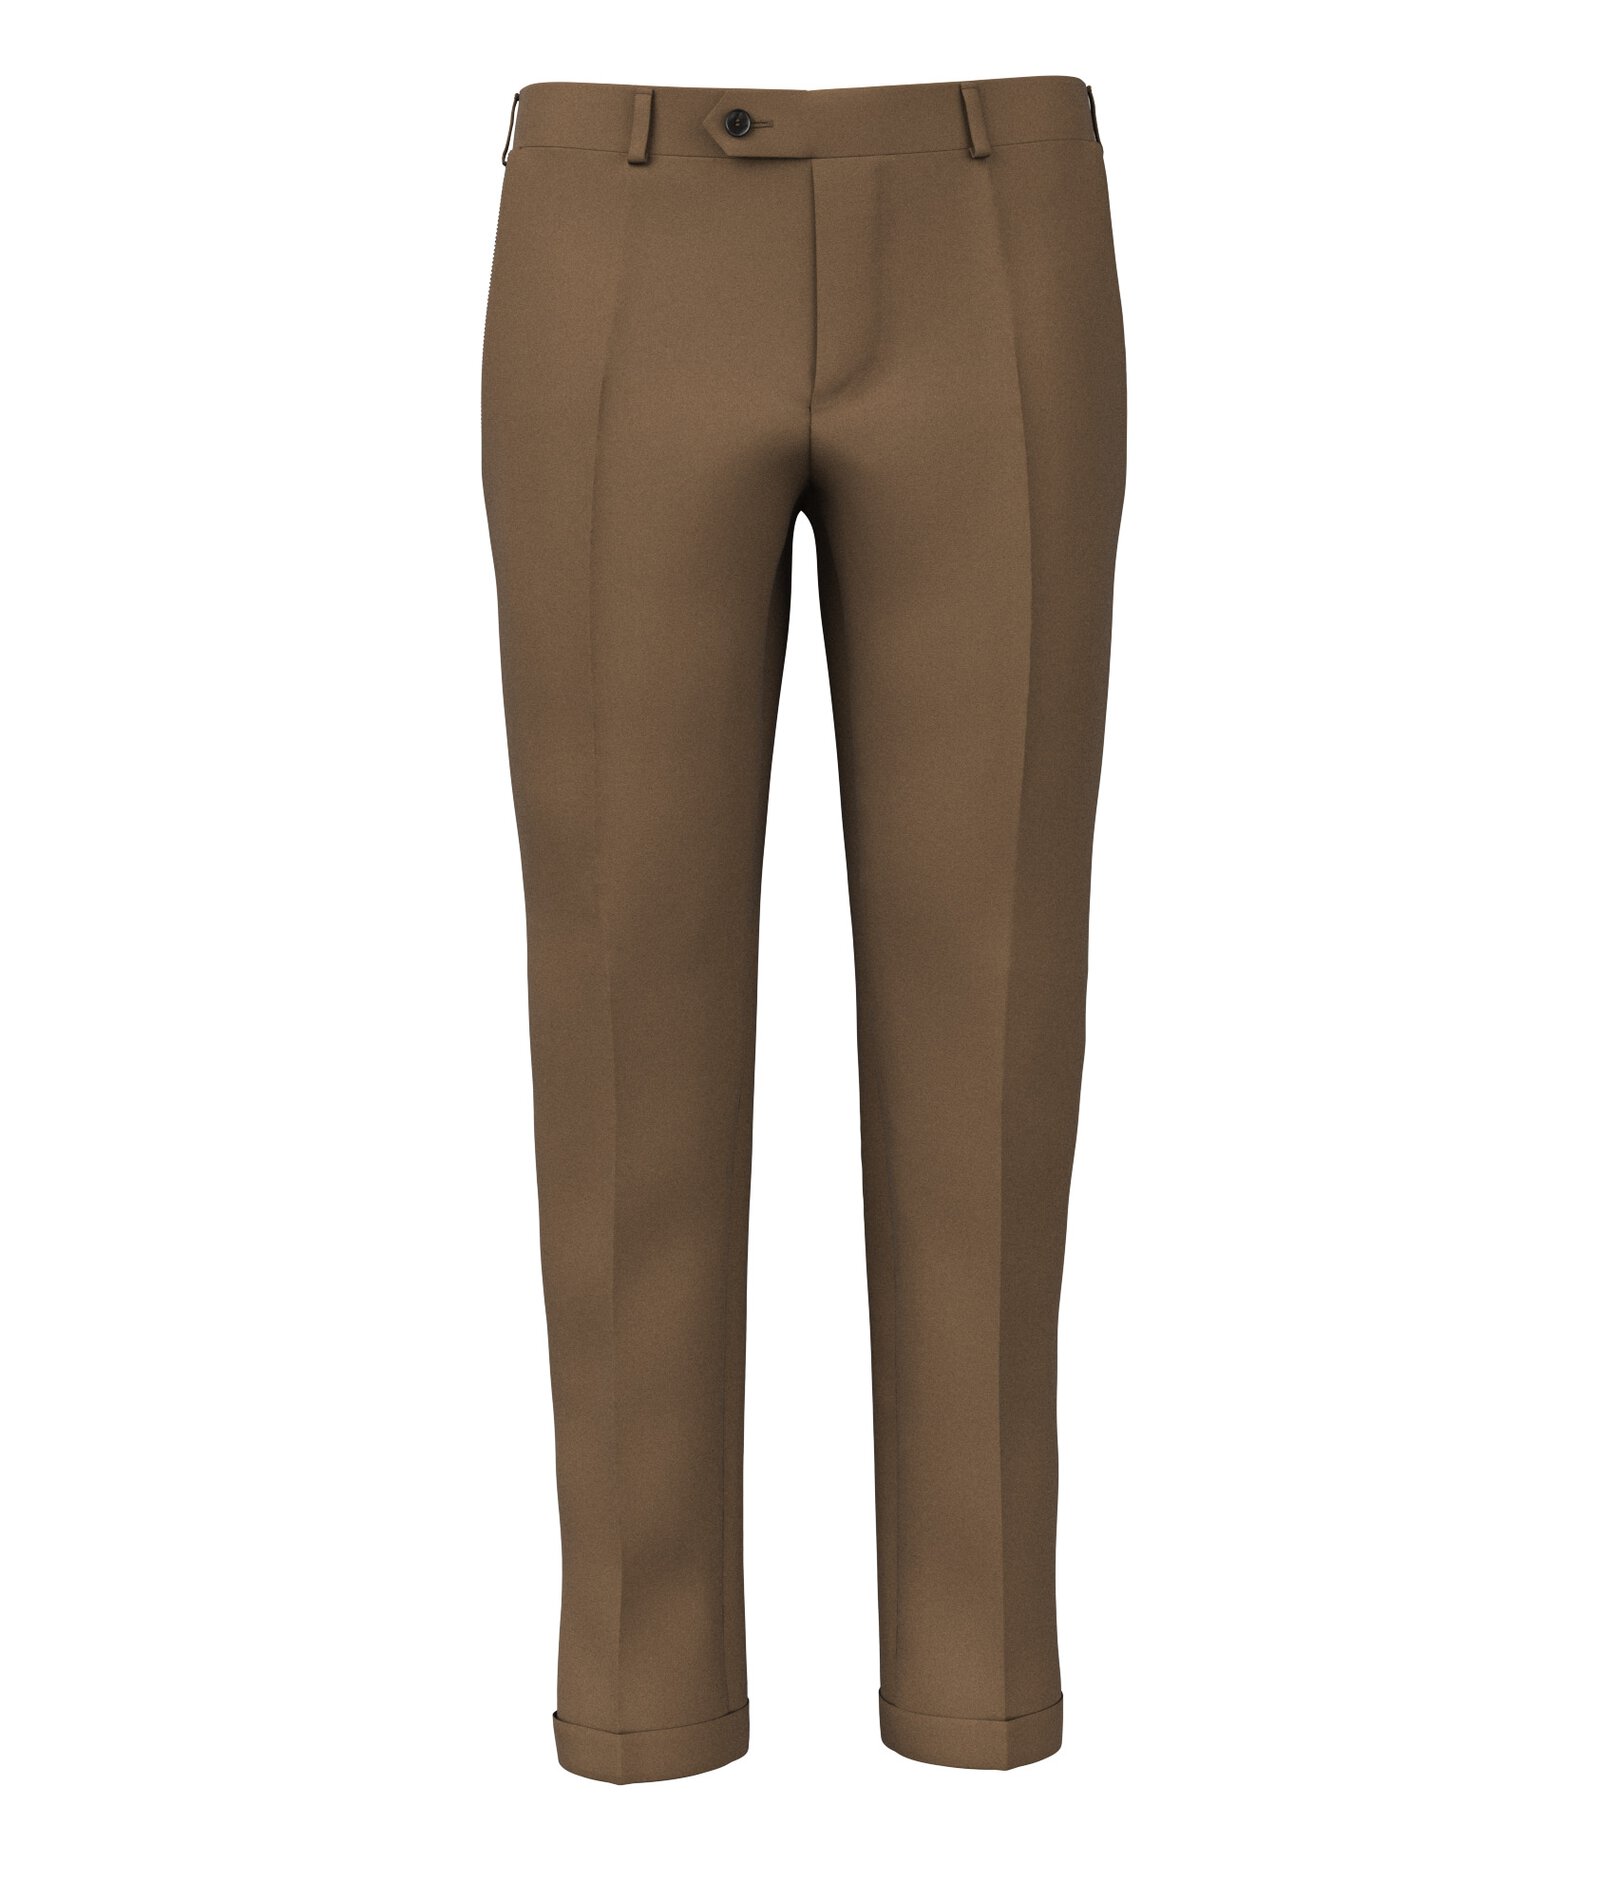 Image of Pantaloni da uomo su misura, Reda, Marrone Caramello in Twill di Lana, Quattro Stagioni | Lanieri